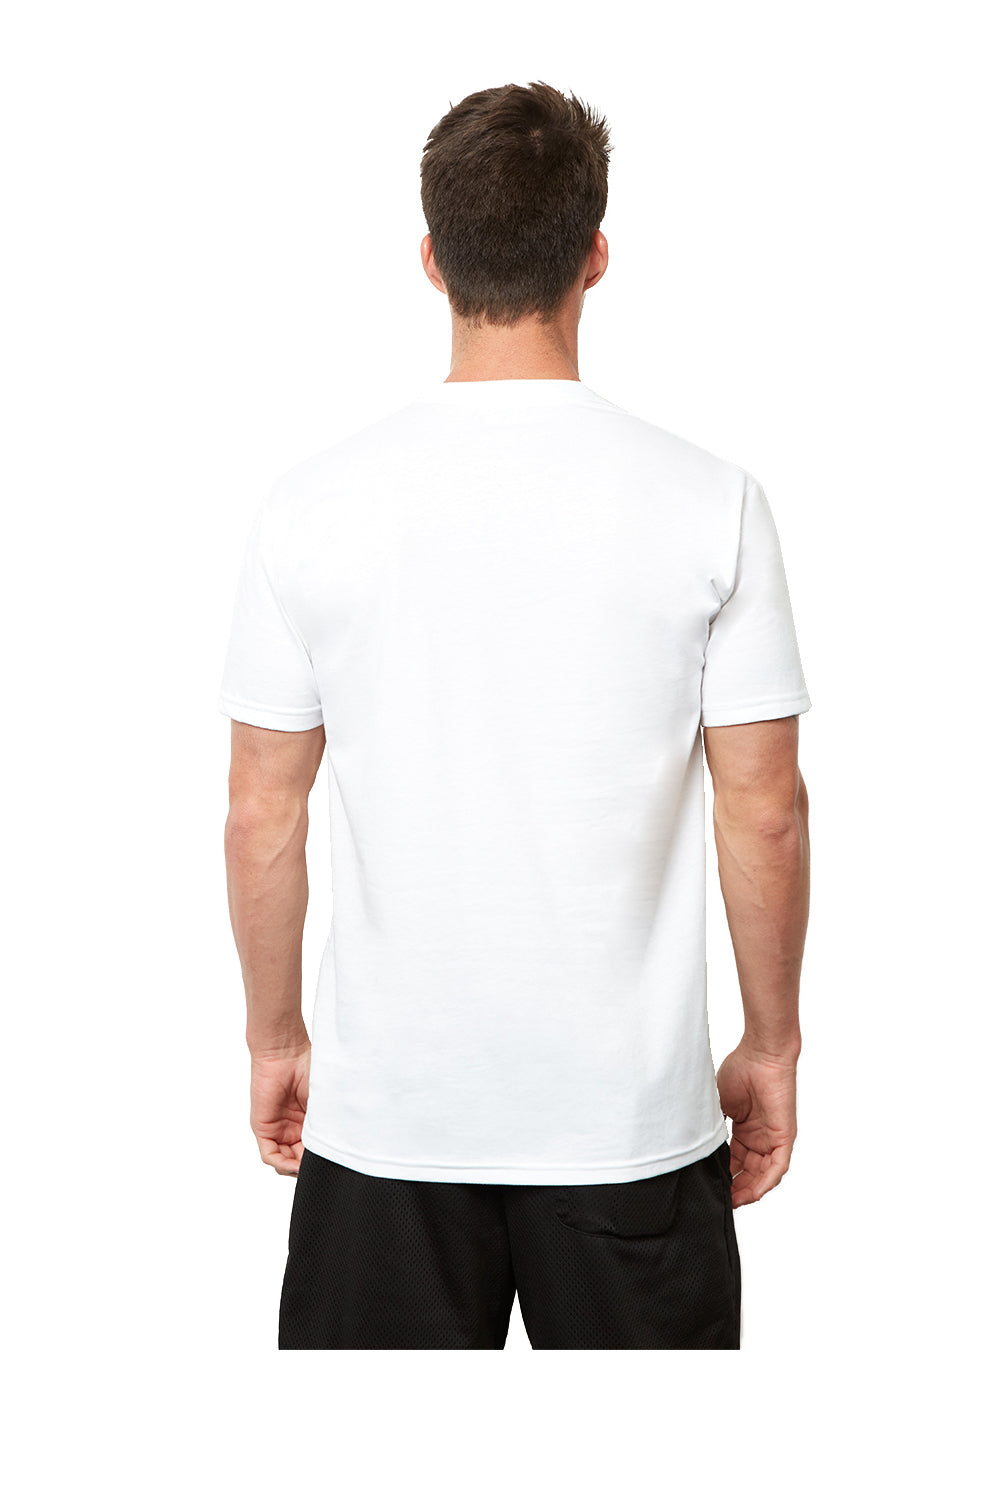 Next Level 4210 Mens Eco Performance Short Sleeve Crewneck T-Shirt White Back